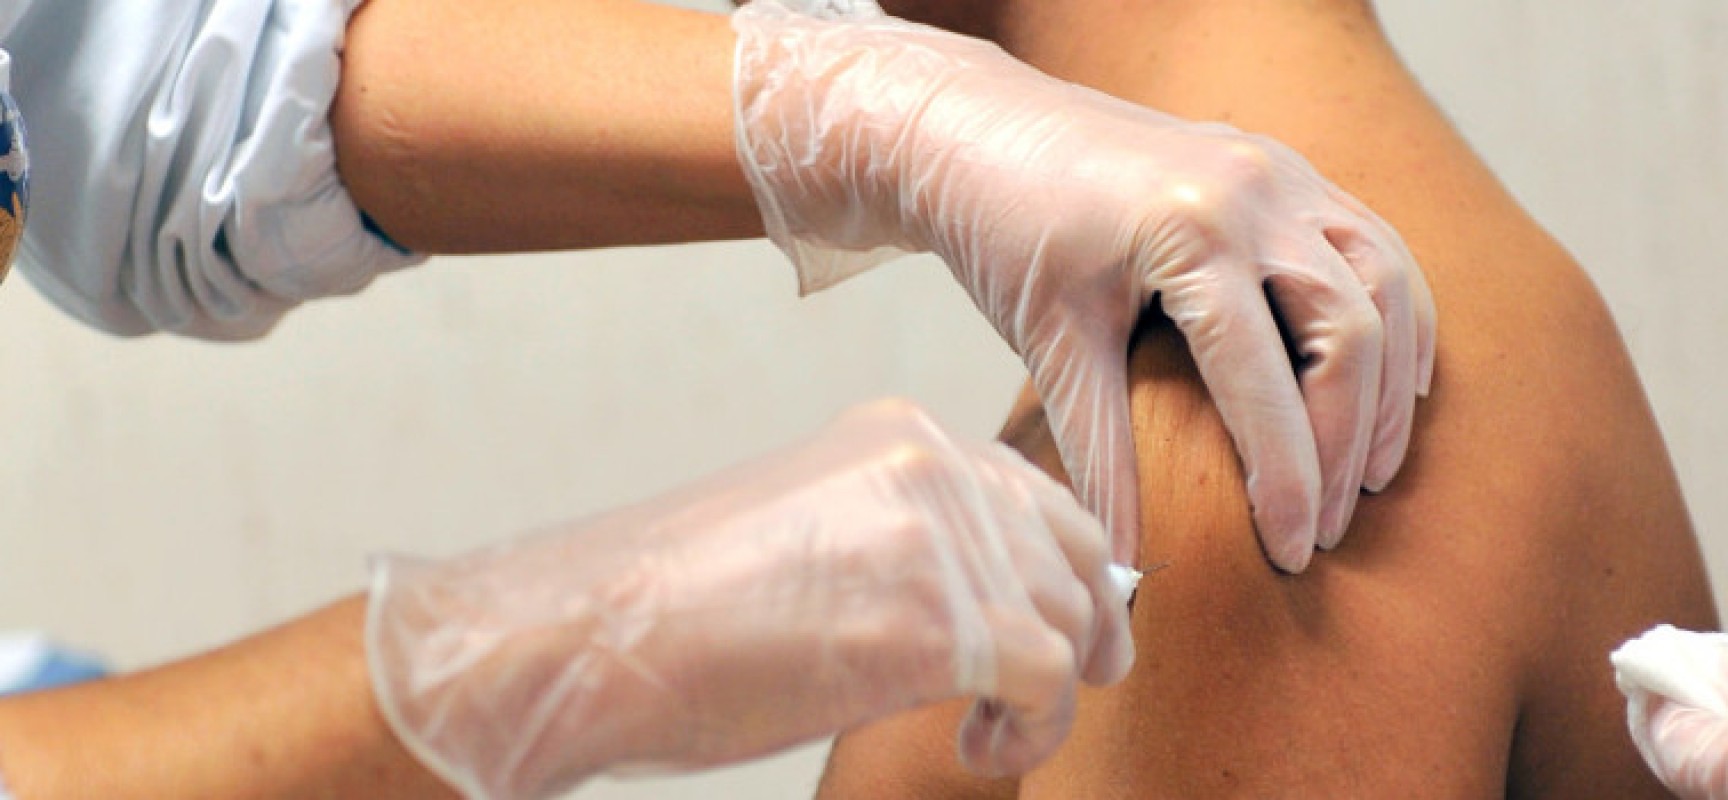 Puglia, accordo con medici base per vaccini: il 15 marzo parte servizio domiciliare over 80